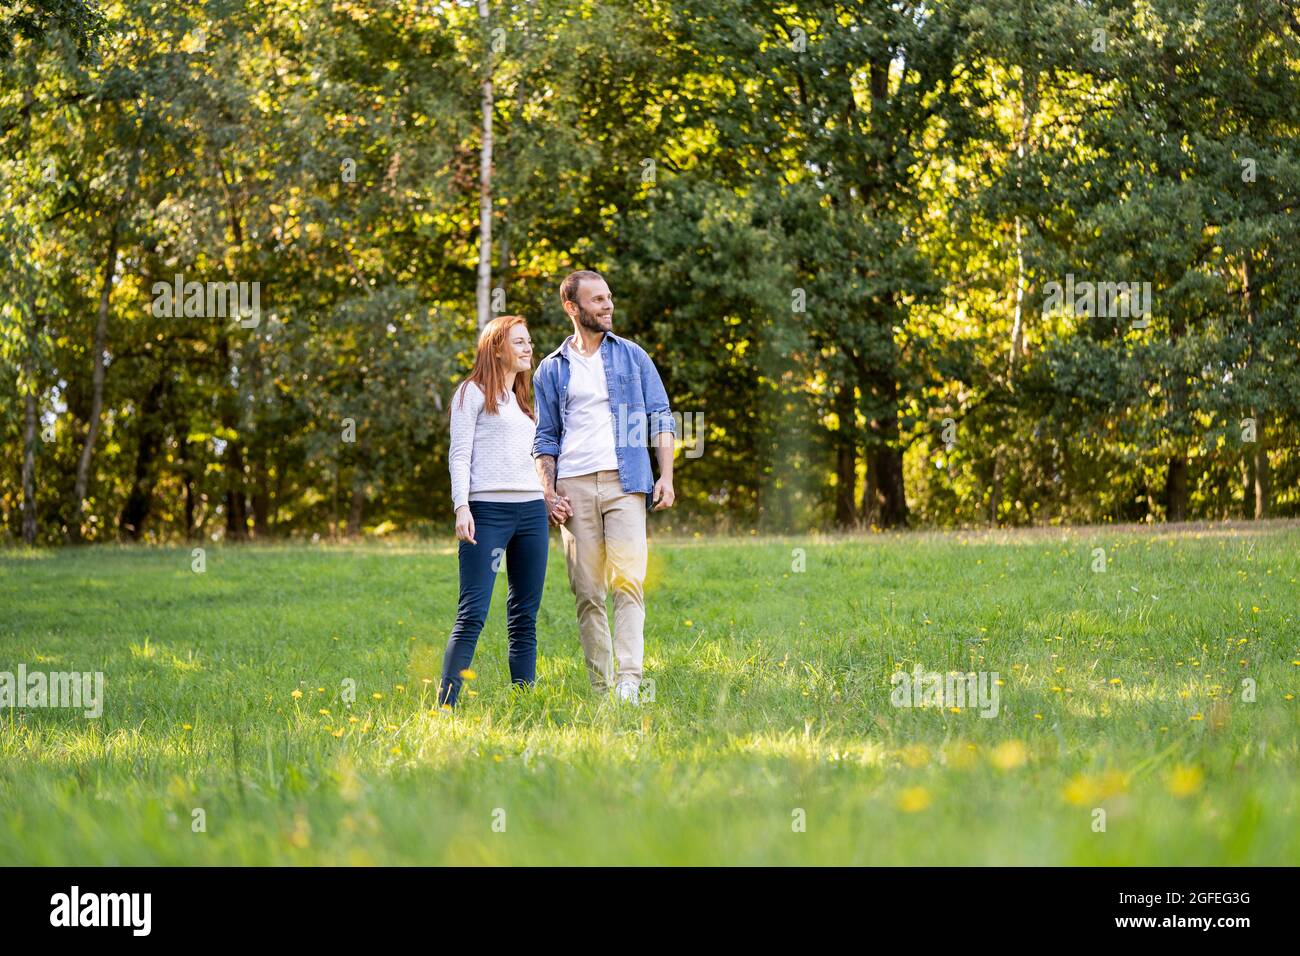 Lächelndes junges Paar, das einen Spaziergang in einem Park genießt Stockfoto